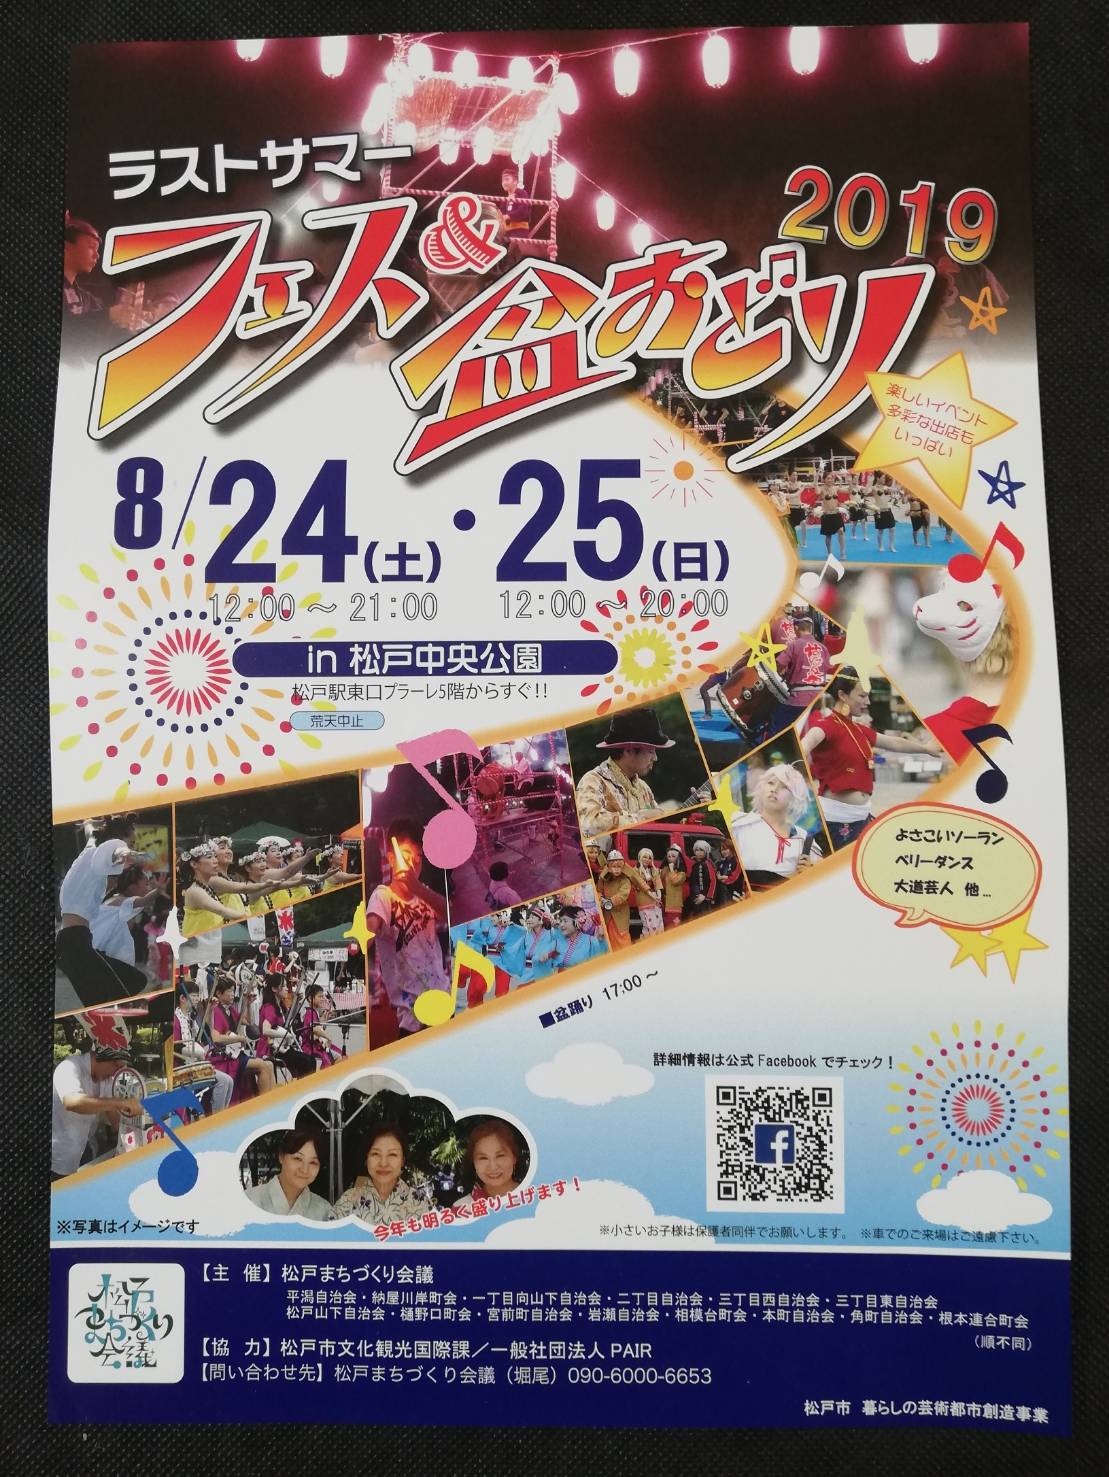 松戸ラストサマーフェス19の詳細 松戸中央公園で8月24日 25日開催 コスプレ盆踊りも 松戸ロード 松戸の地域情報